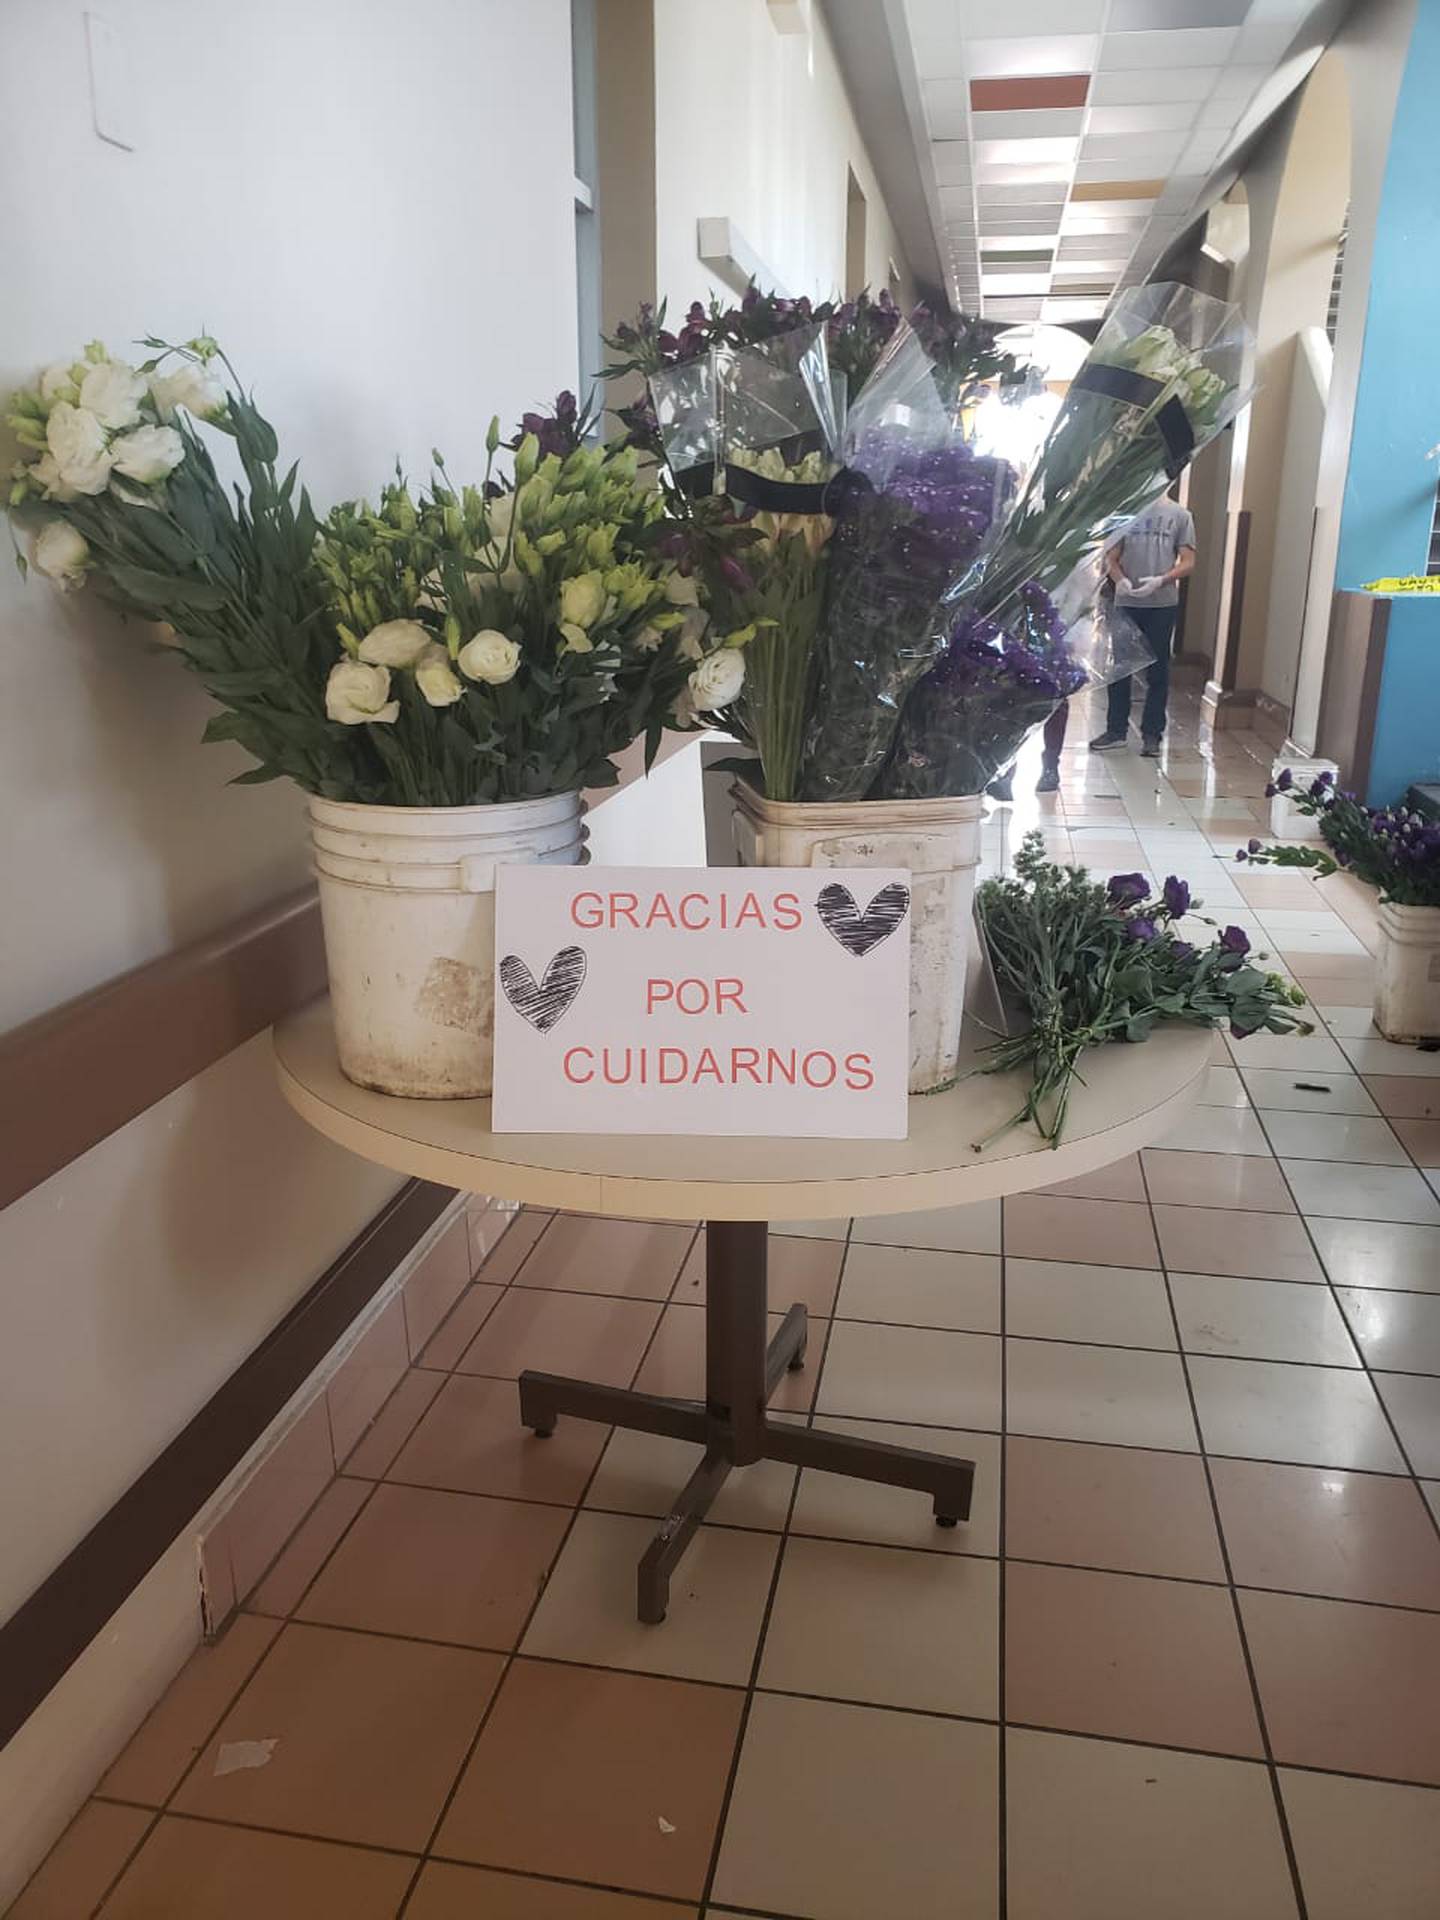 Fernando Alfaro, es un muchachillo de quinto año de colegio, bien lleno de amor, quien tomó la decisión de irse al Hospital San Juan de Dios y regalarle flores a los trabajadores de la Salud.